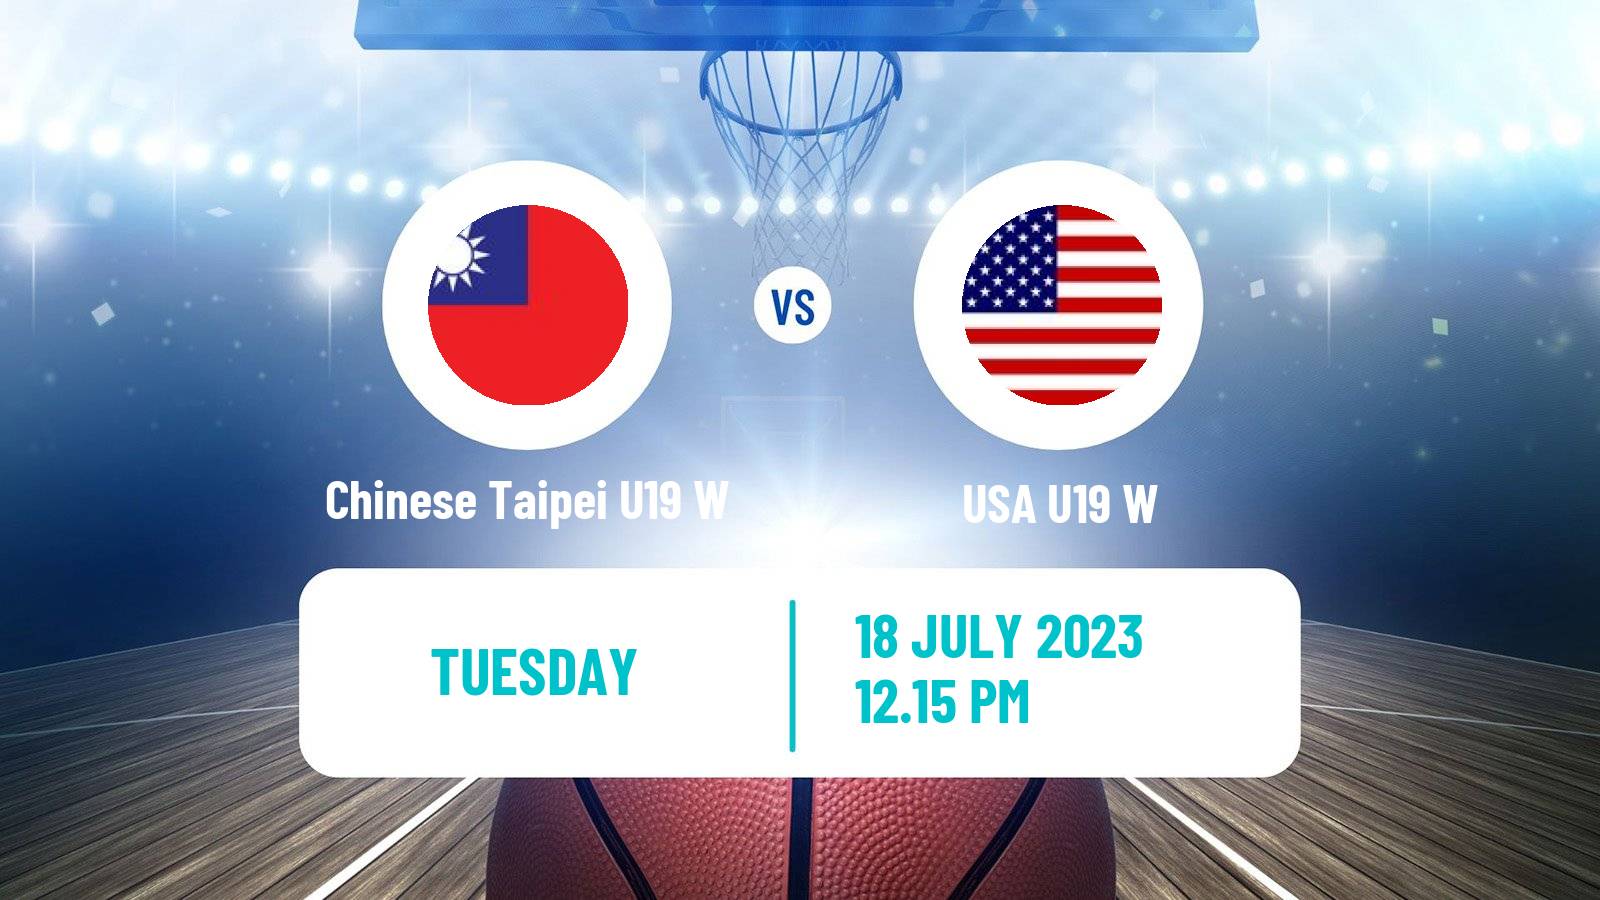 Basketball World Championship U19 Basketball Women Chinese Taipei U19 W - USA U19 W